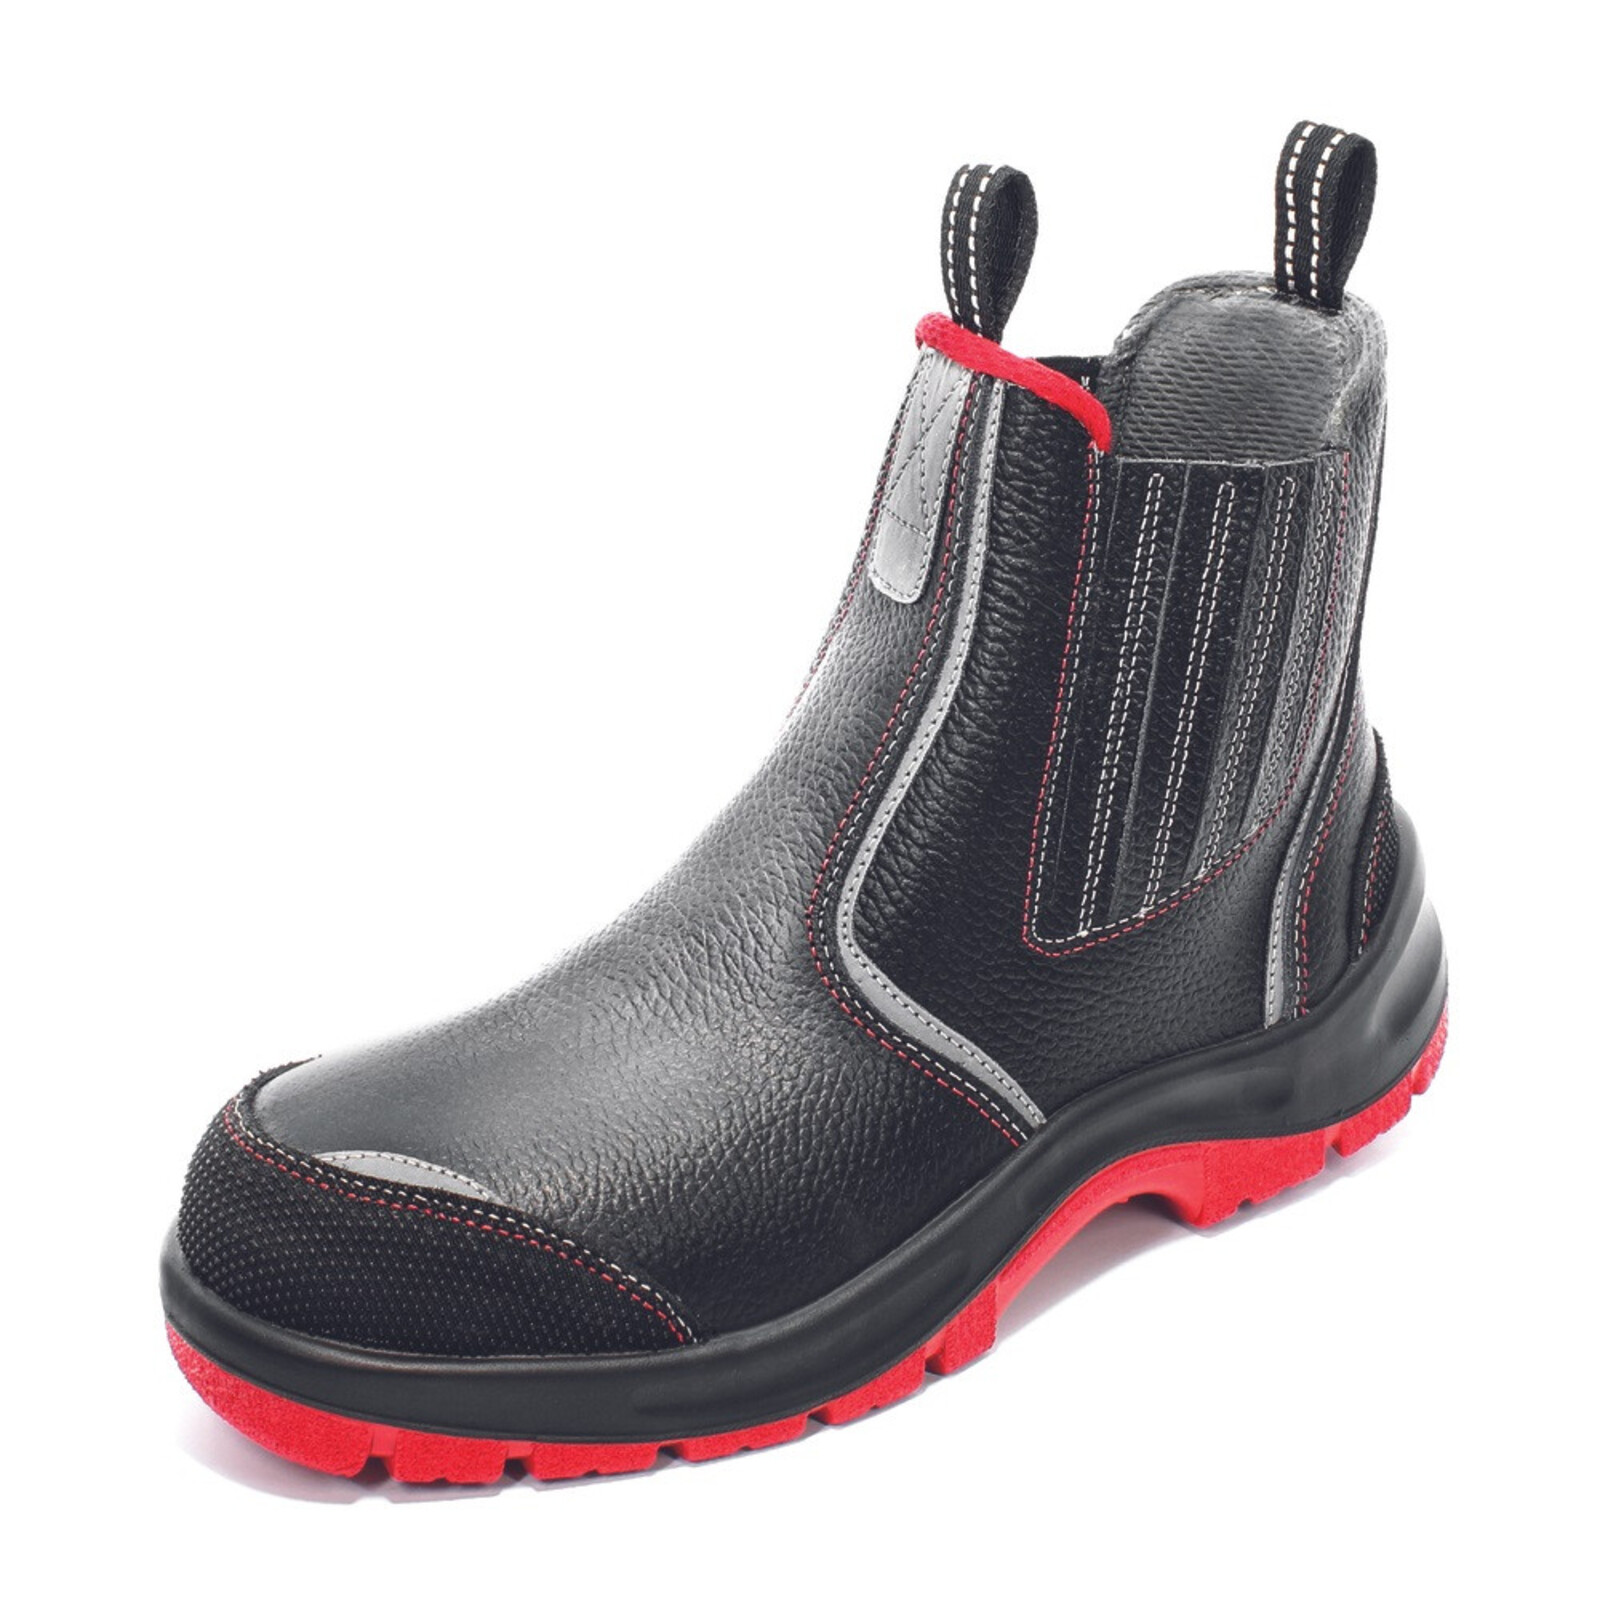 Bezpečnostná členková obuv Panda Strong Nuovo Eurotech MF S3 SRC - veľkosť: 48, farba: čierna/červená